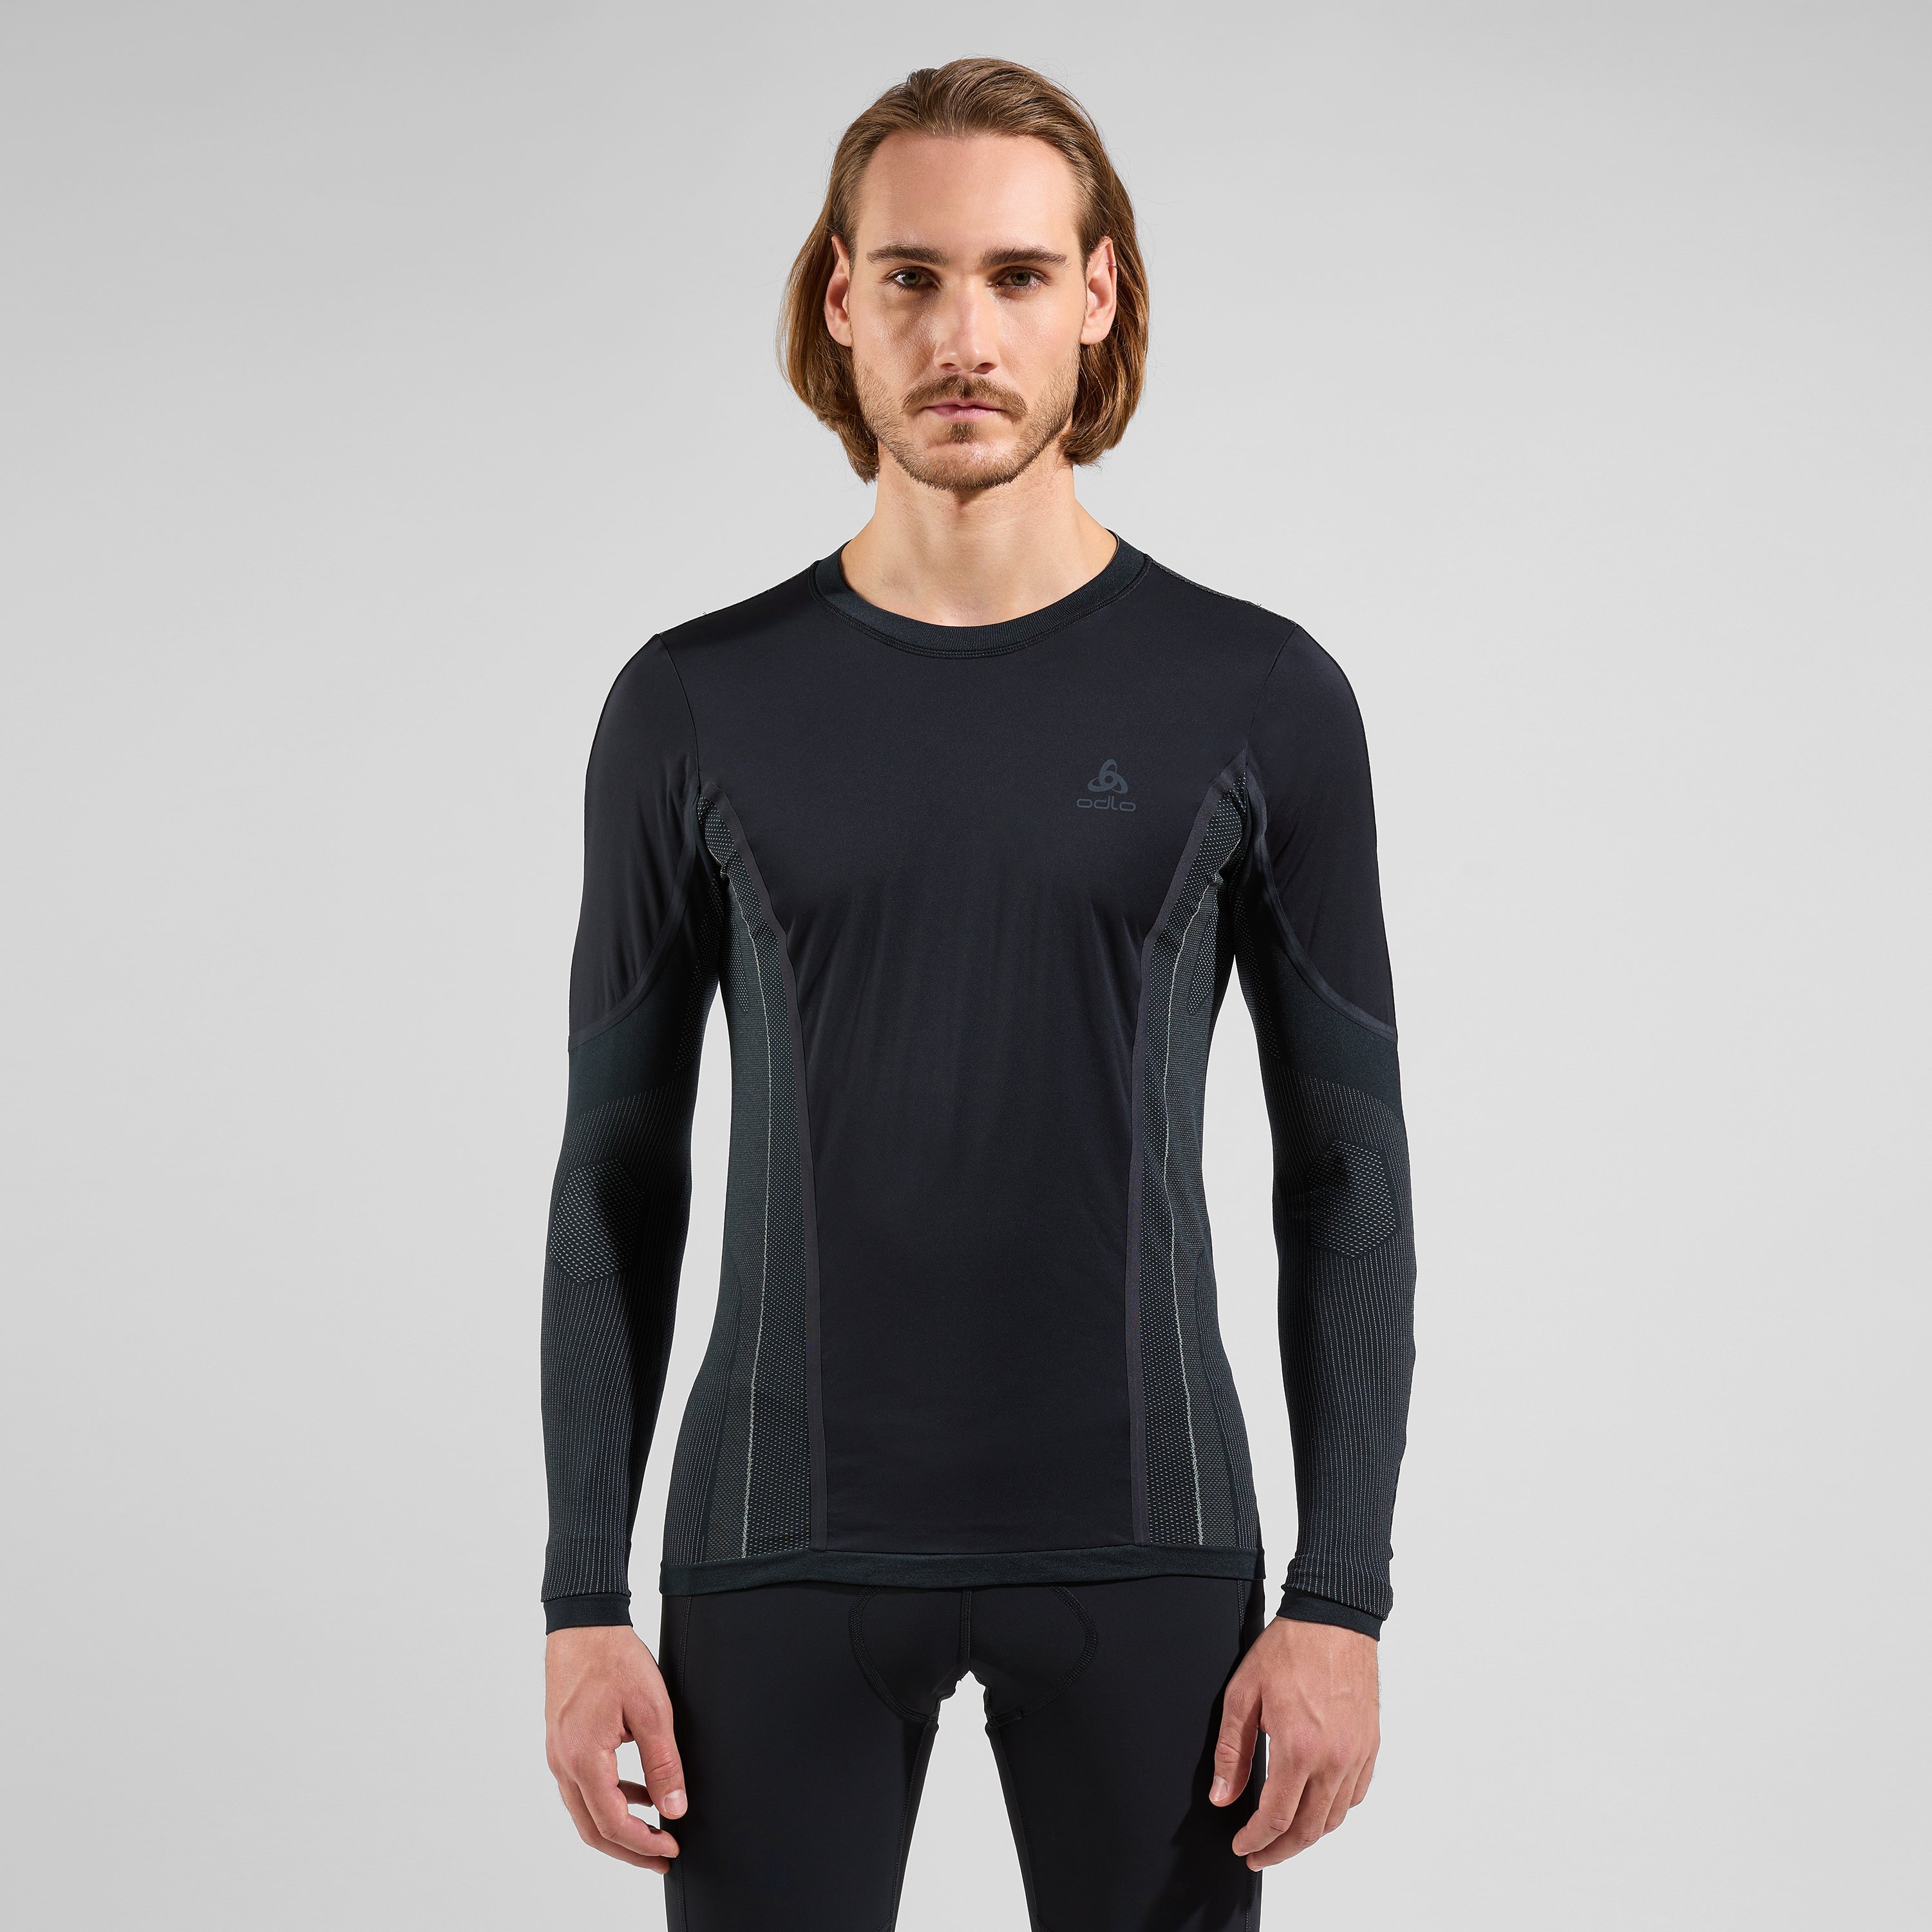 ODLO Perfomance Windshield Light Radsport-Sportunterwäsche Langarm-Shirt für Herren, S, schwarz